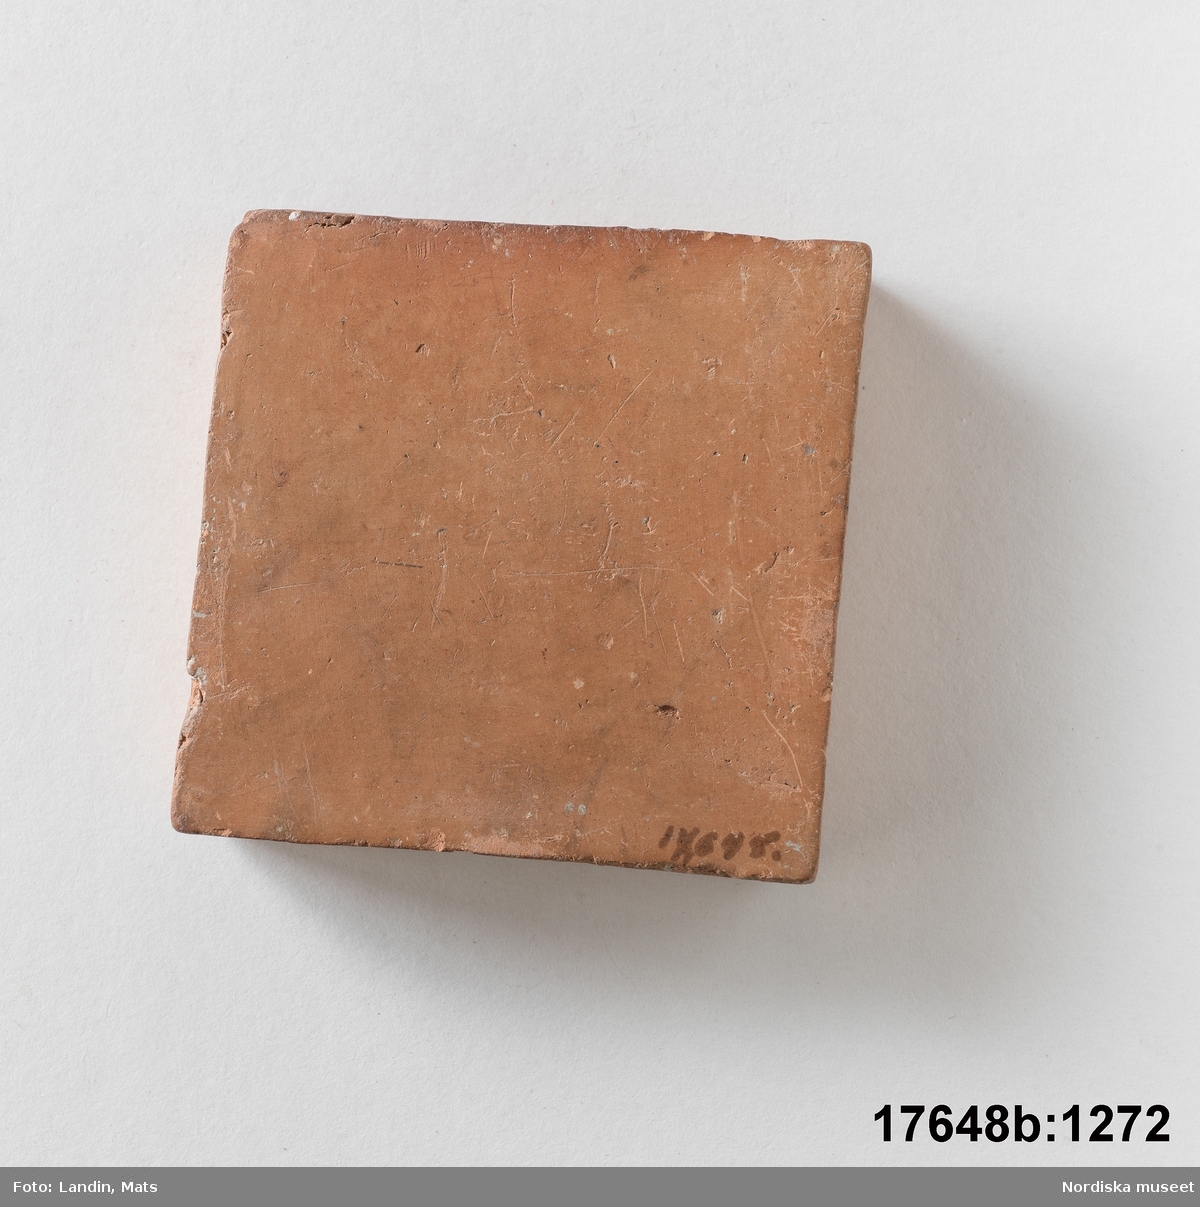 Kvadratisk platta av bränd oglaserad röd lera. På en sida text: "Bränd men oglaserad".
/Leif Wallin 2014-01-07